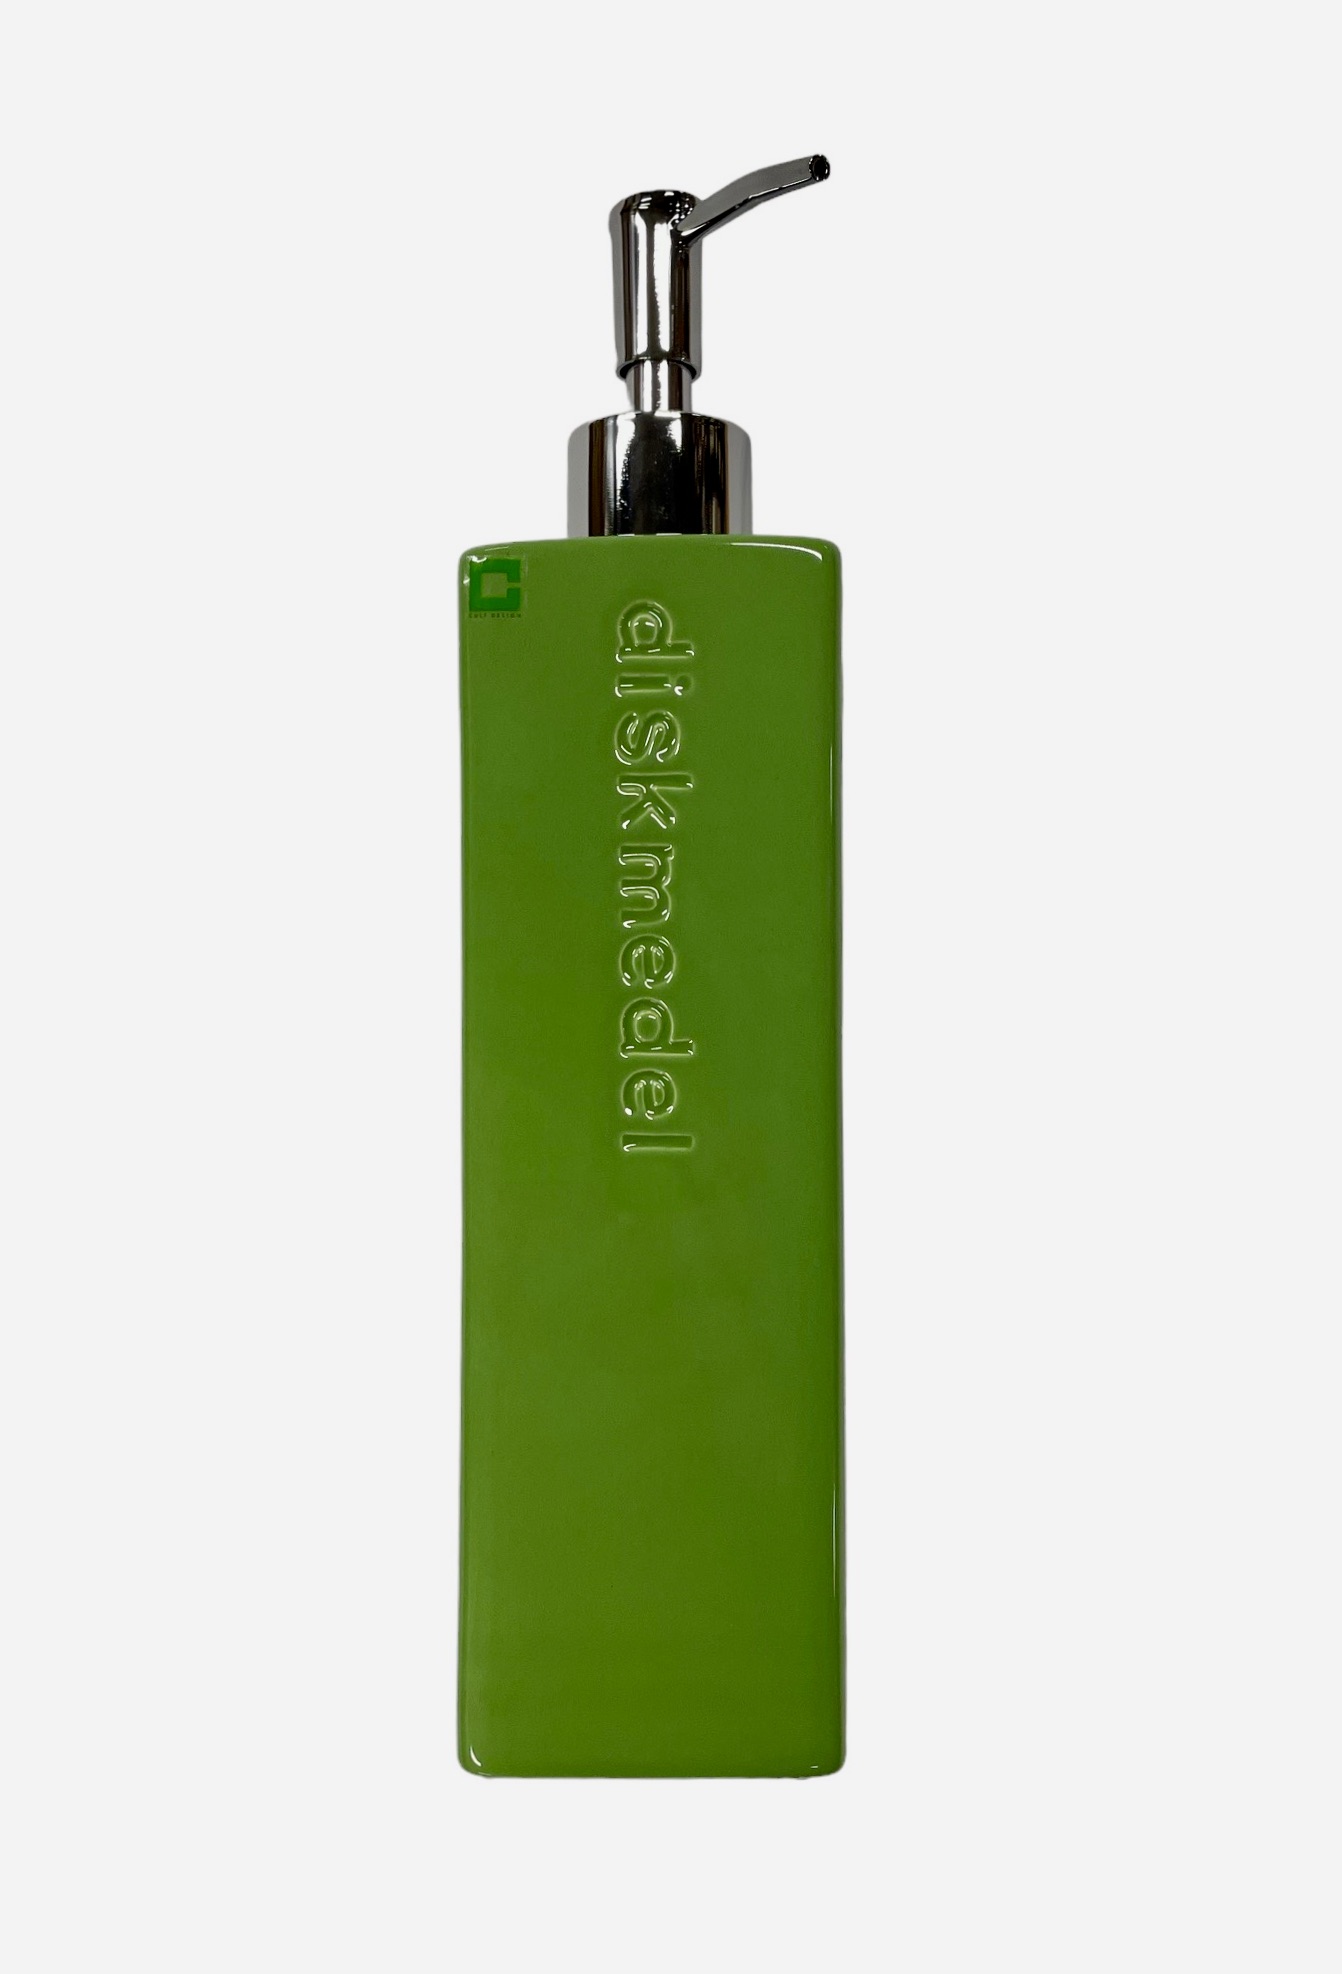 Tvålpump/diskmedelspump i grönt från Cult design höjd 25 cm.